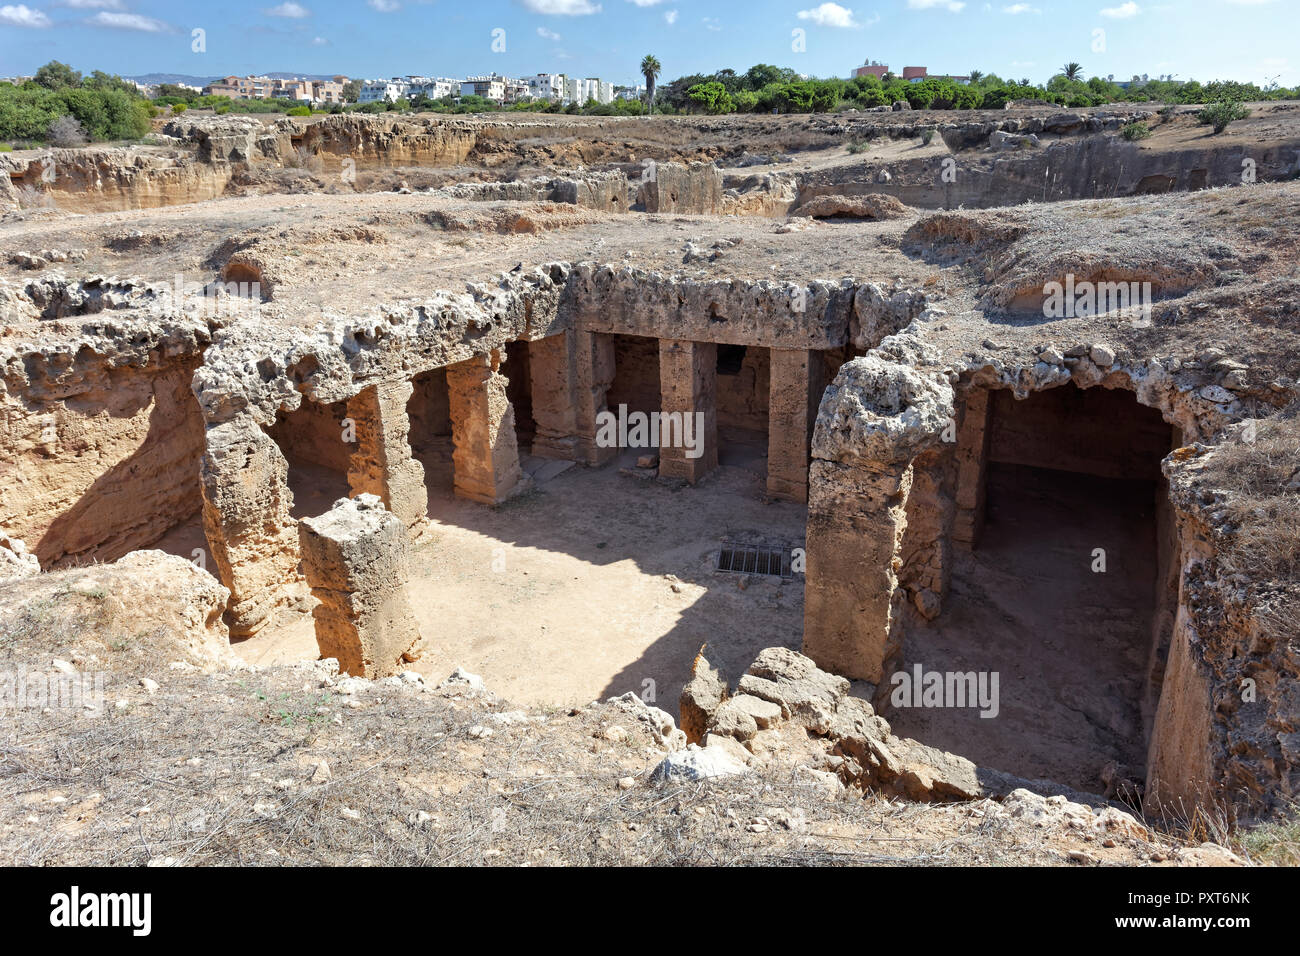 Sitio arqueológico de excavación, tumbas reales de Nea Pafos, necrópolis de la antigüedad romana, República de Chipre, Chipre Foto de stock